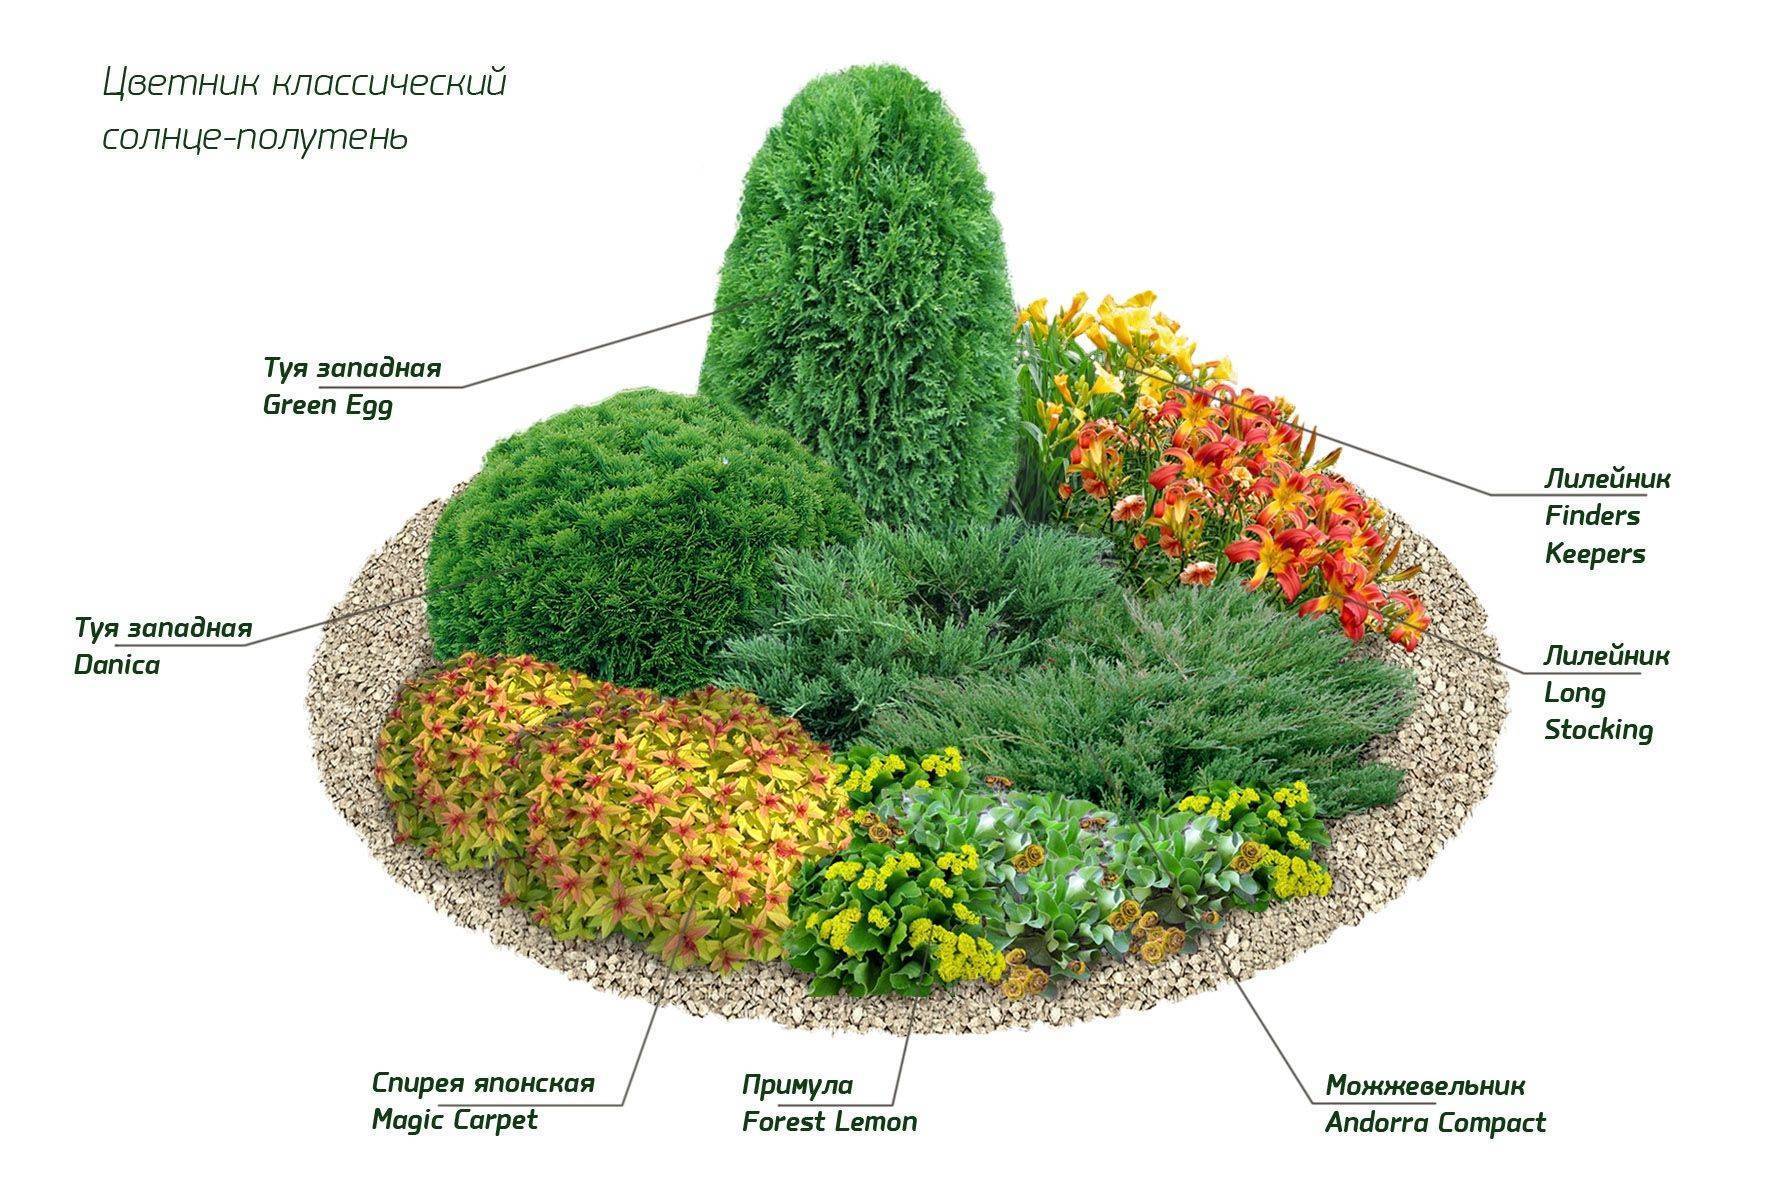 Миксбордер своими руками: схемы и подбор растений для ландшафтного дизайна, фото